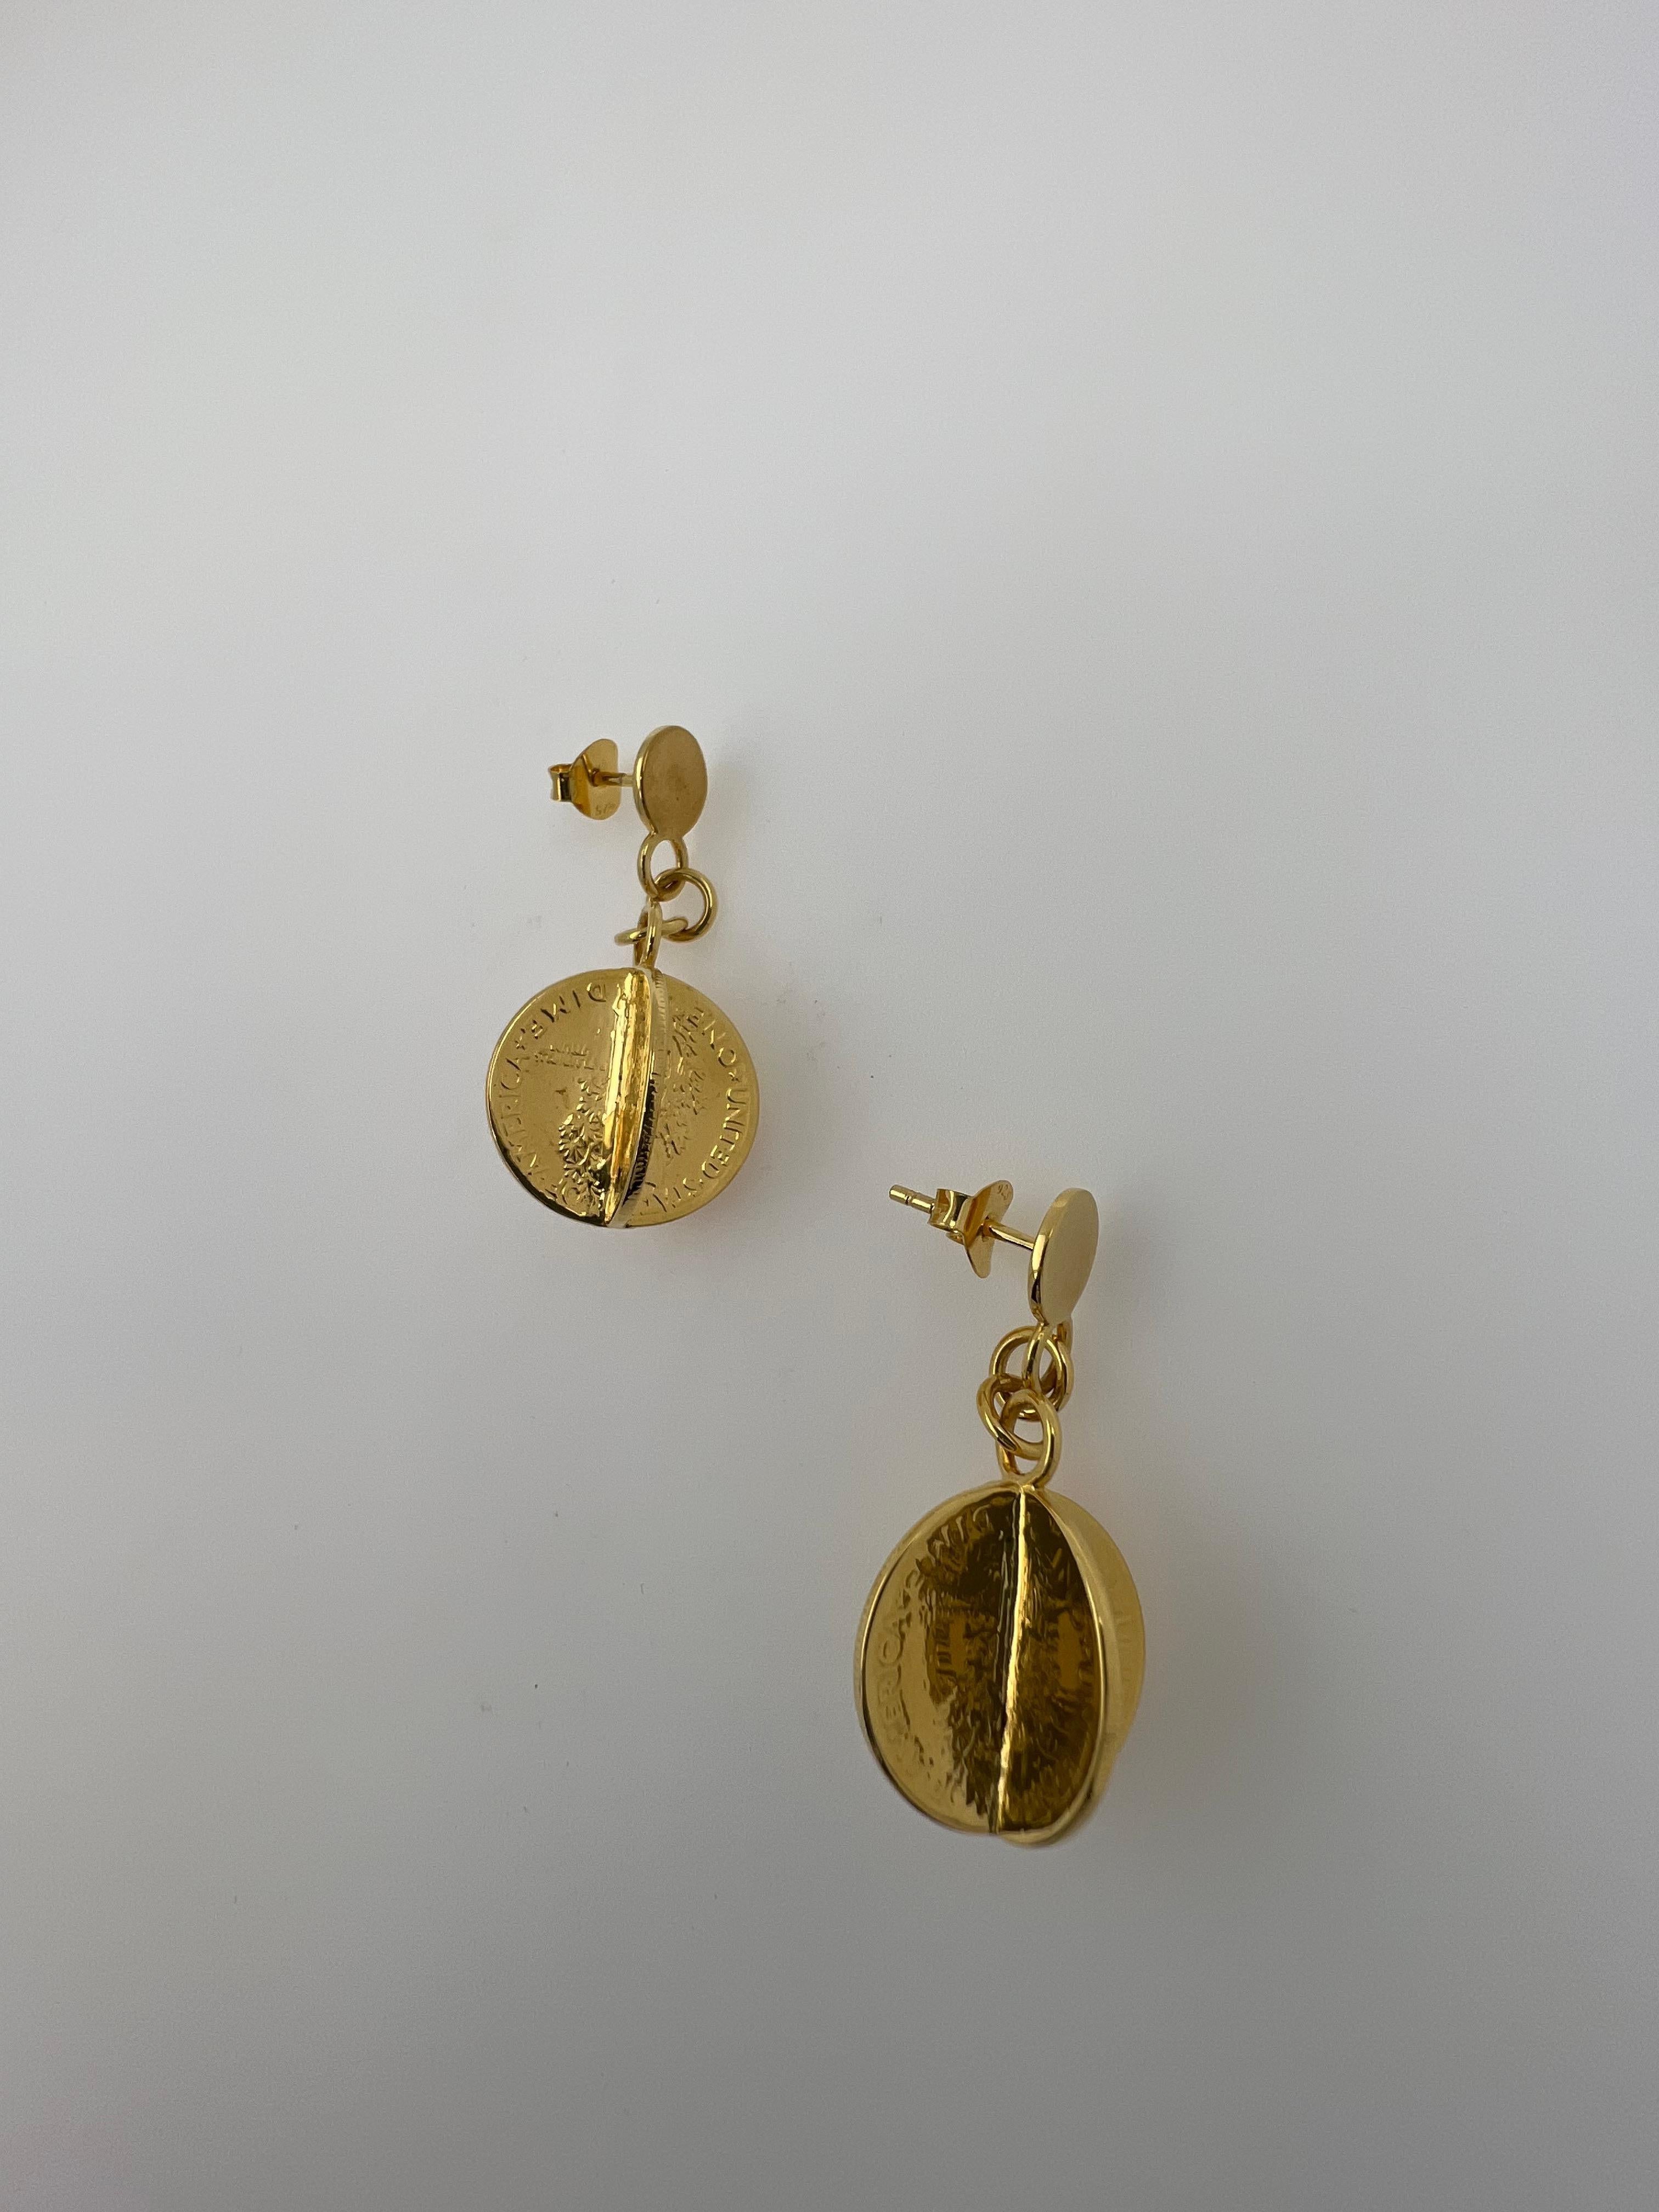 gold dollar earrings